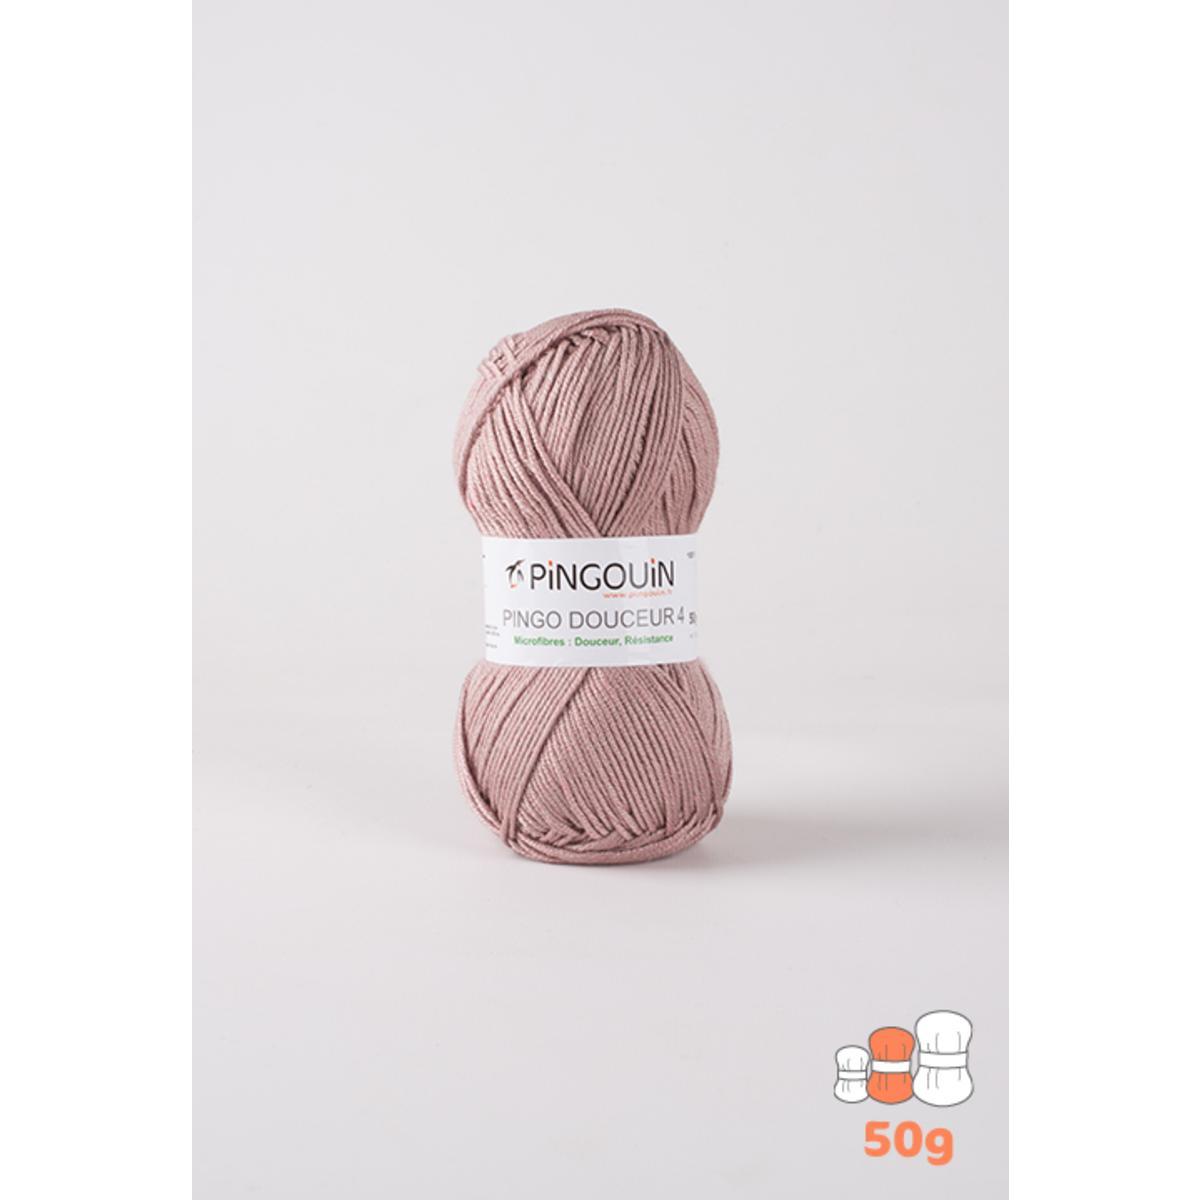 Pelote acrylique Pingo Douceur 4 - 138 m - Rose - PINGOUIN